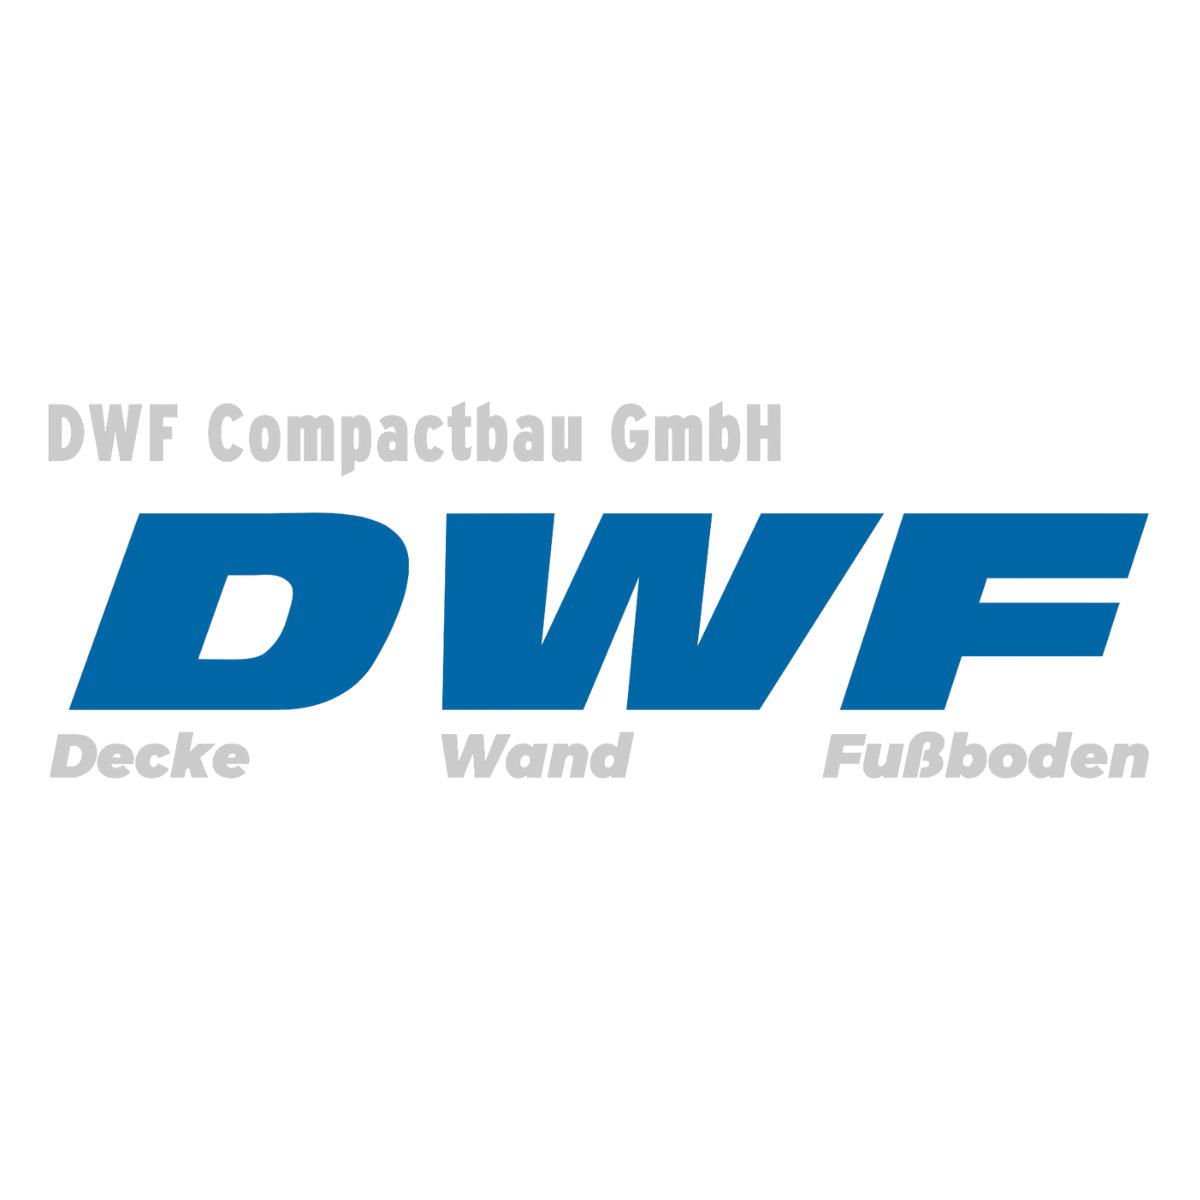 Logo. DWF Compactbau GmbH. Ihr Spezialist für Decke - Wand- Fußboden. 
Wirkungsbereiche: Sanierung und Neubau im Wohnungs- und Gesellschaftsbau, Hotel-, Gastronomie-, und Ladenbau. Wir sind spezialisiert auf:
Trockenbau allgemein, dabei Spezialisierung au